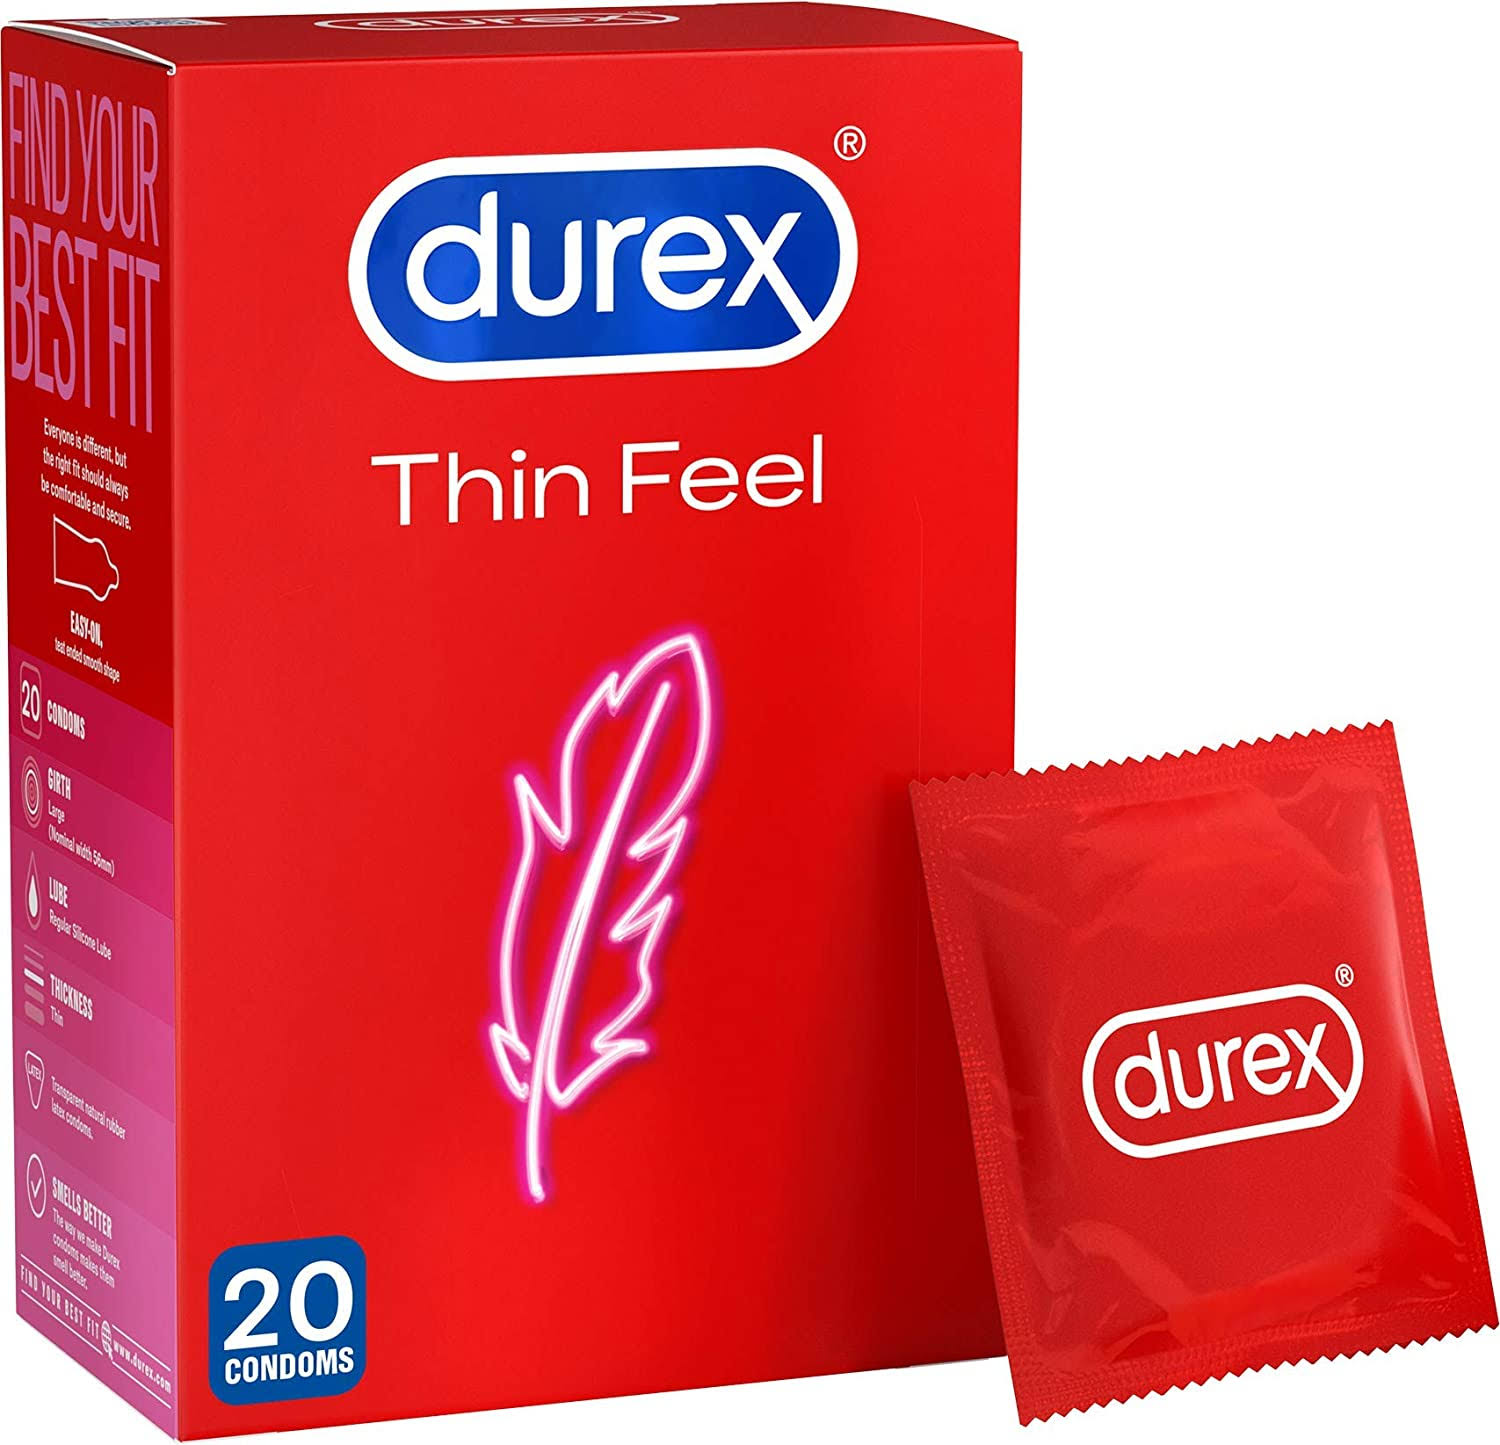 Durex Thin Feel Condoms - 20ct